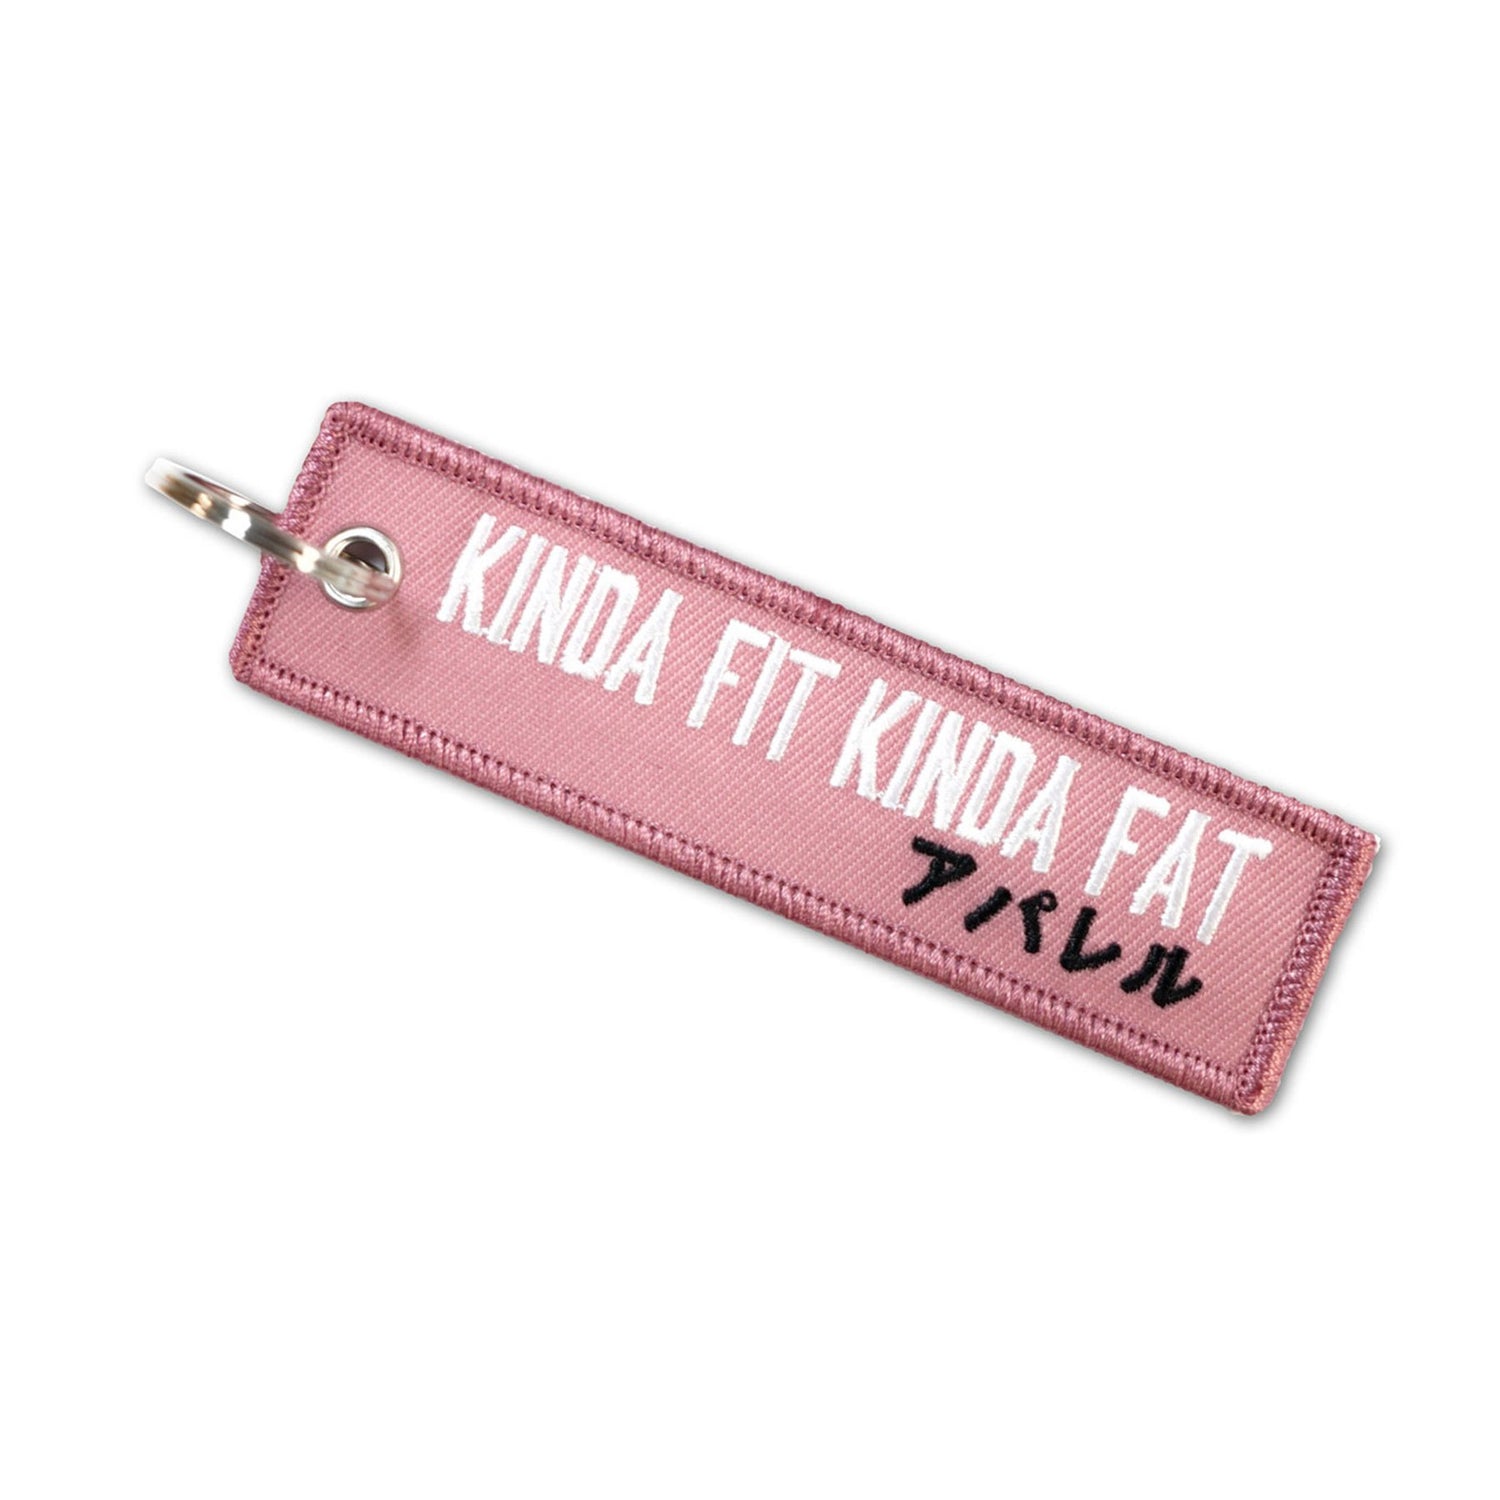 Kinda Fit Kinda Fat KFKF Pink Jet Tag Keychain - 9 for 9